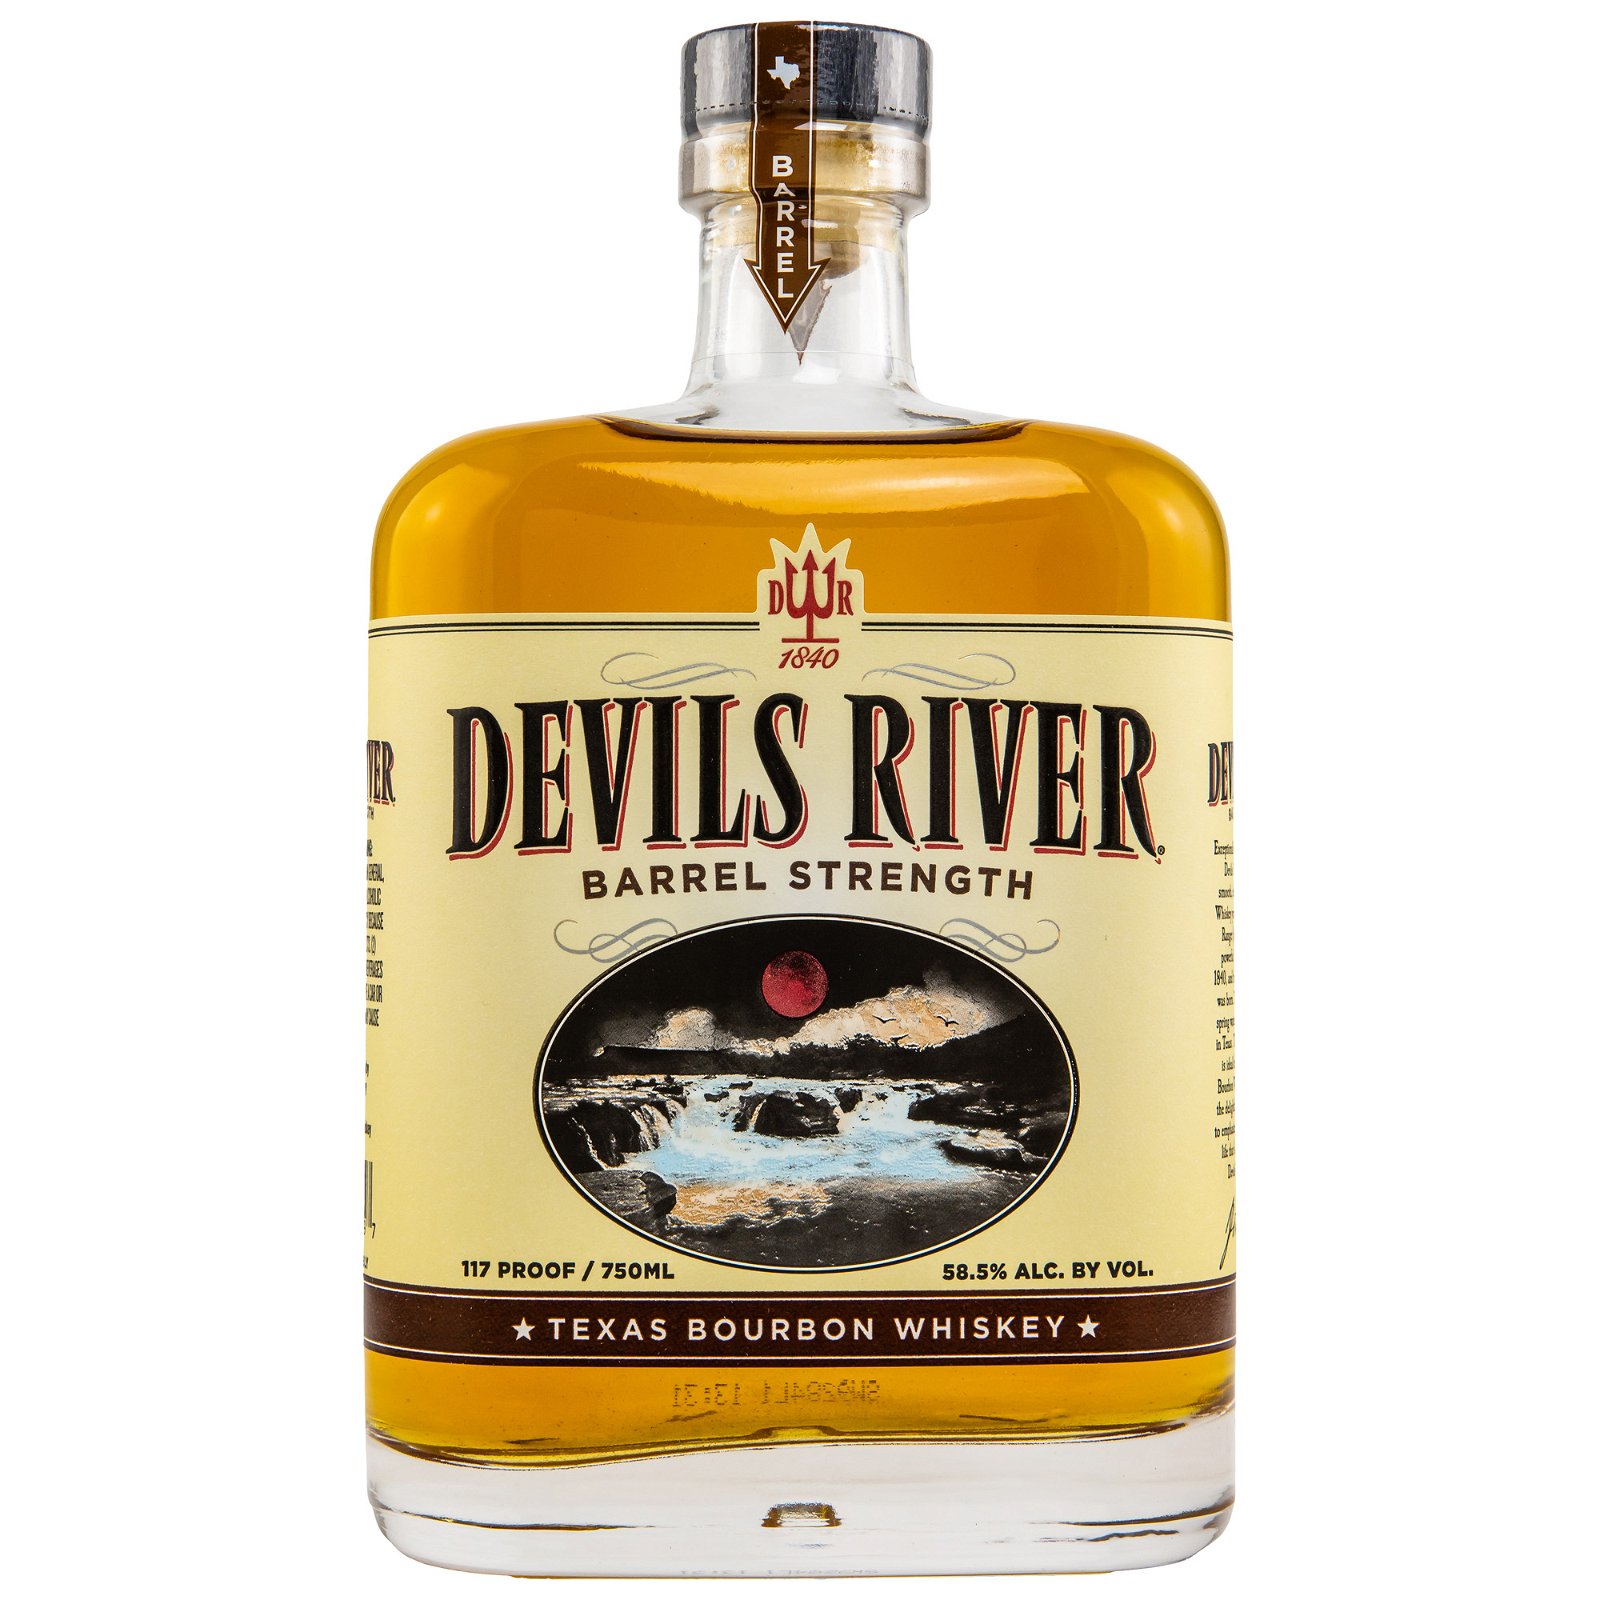 Devils River Barrel Strength Texas Bourbon